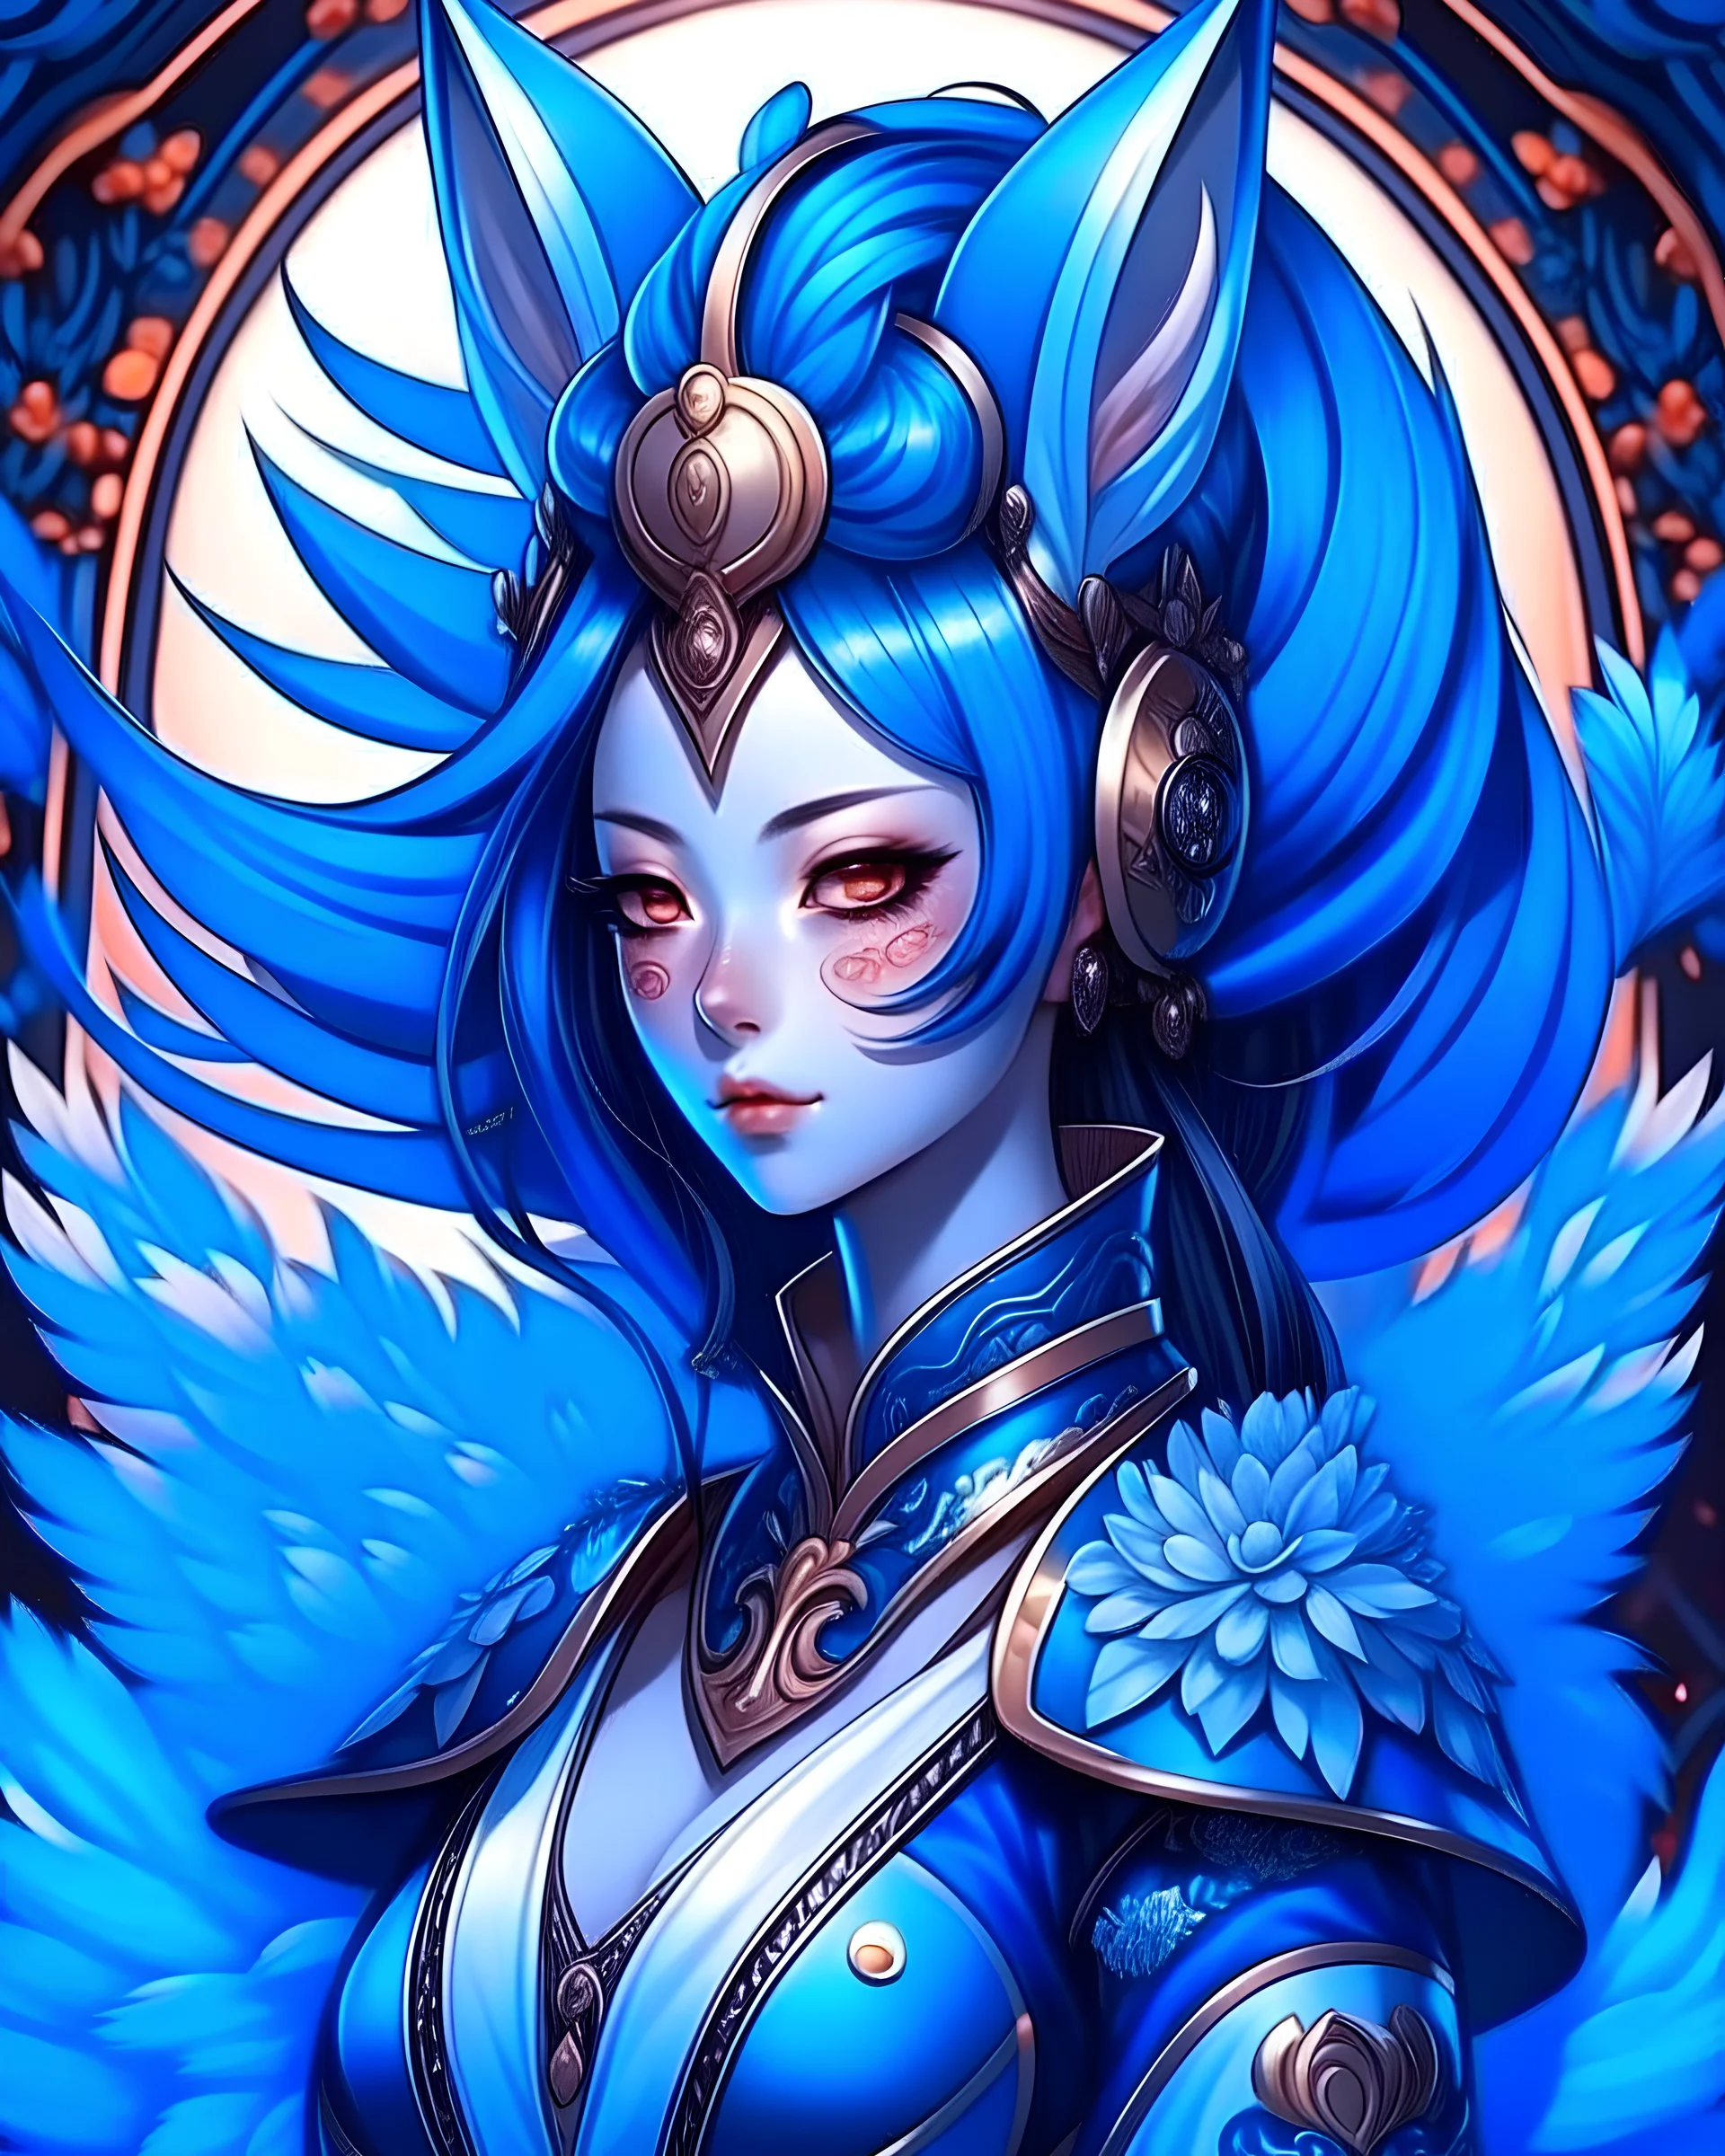 Create an ethereal. Kitsune, girl, dark blue hair and ears, fluffy ears, highly detailed, precise line work, samurai armor, big face